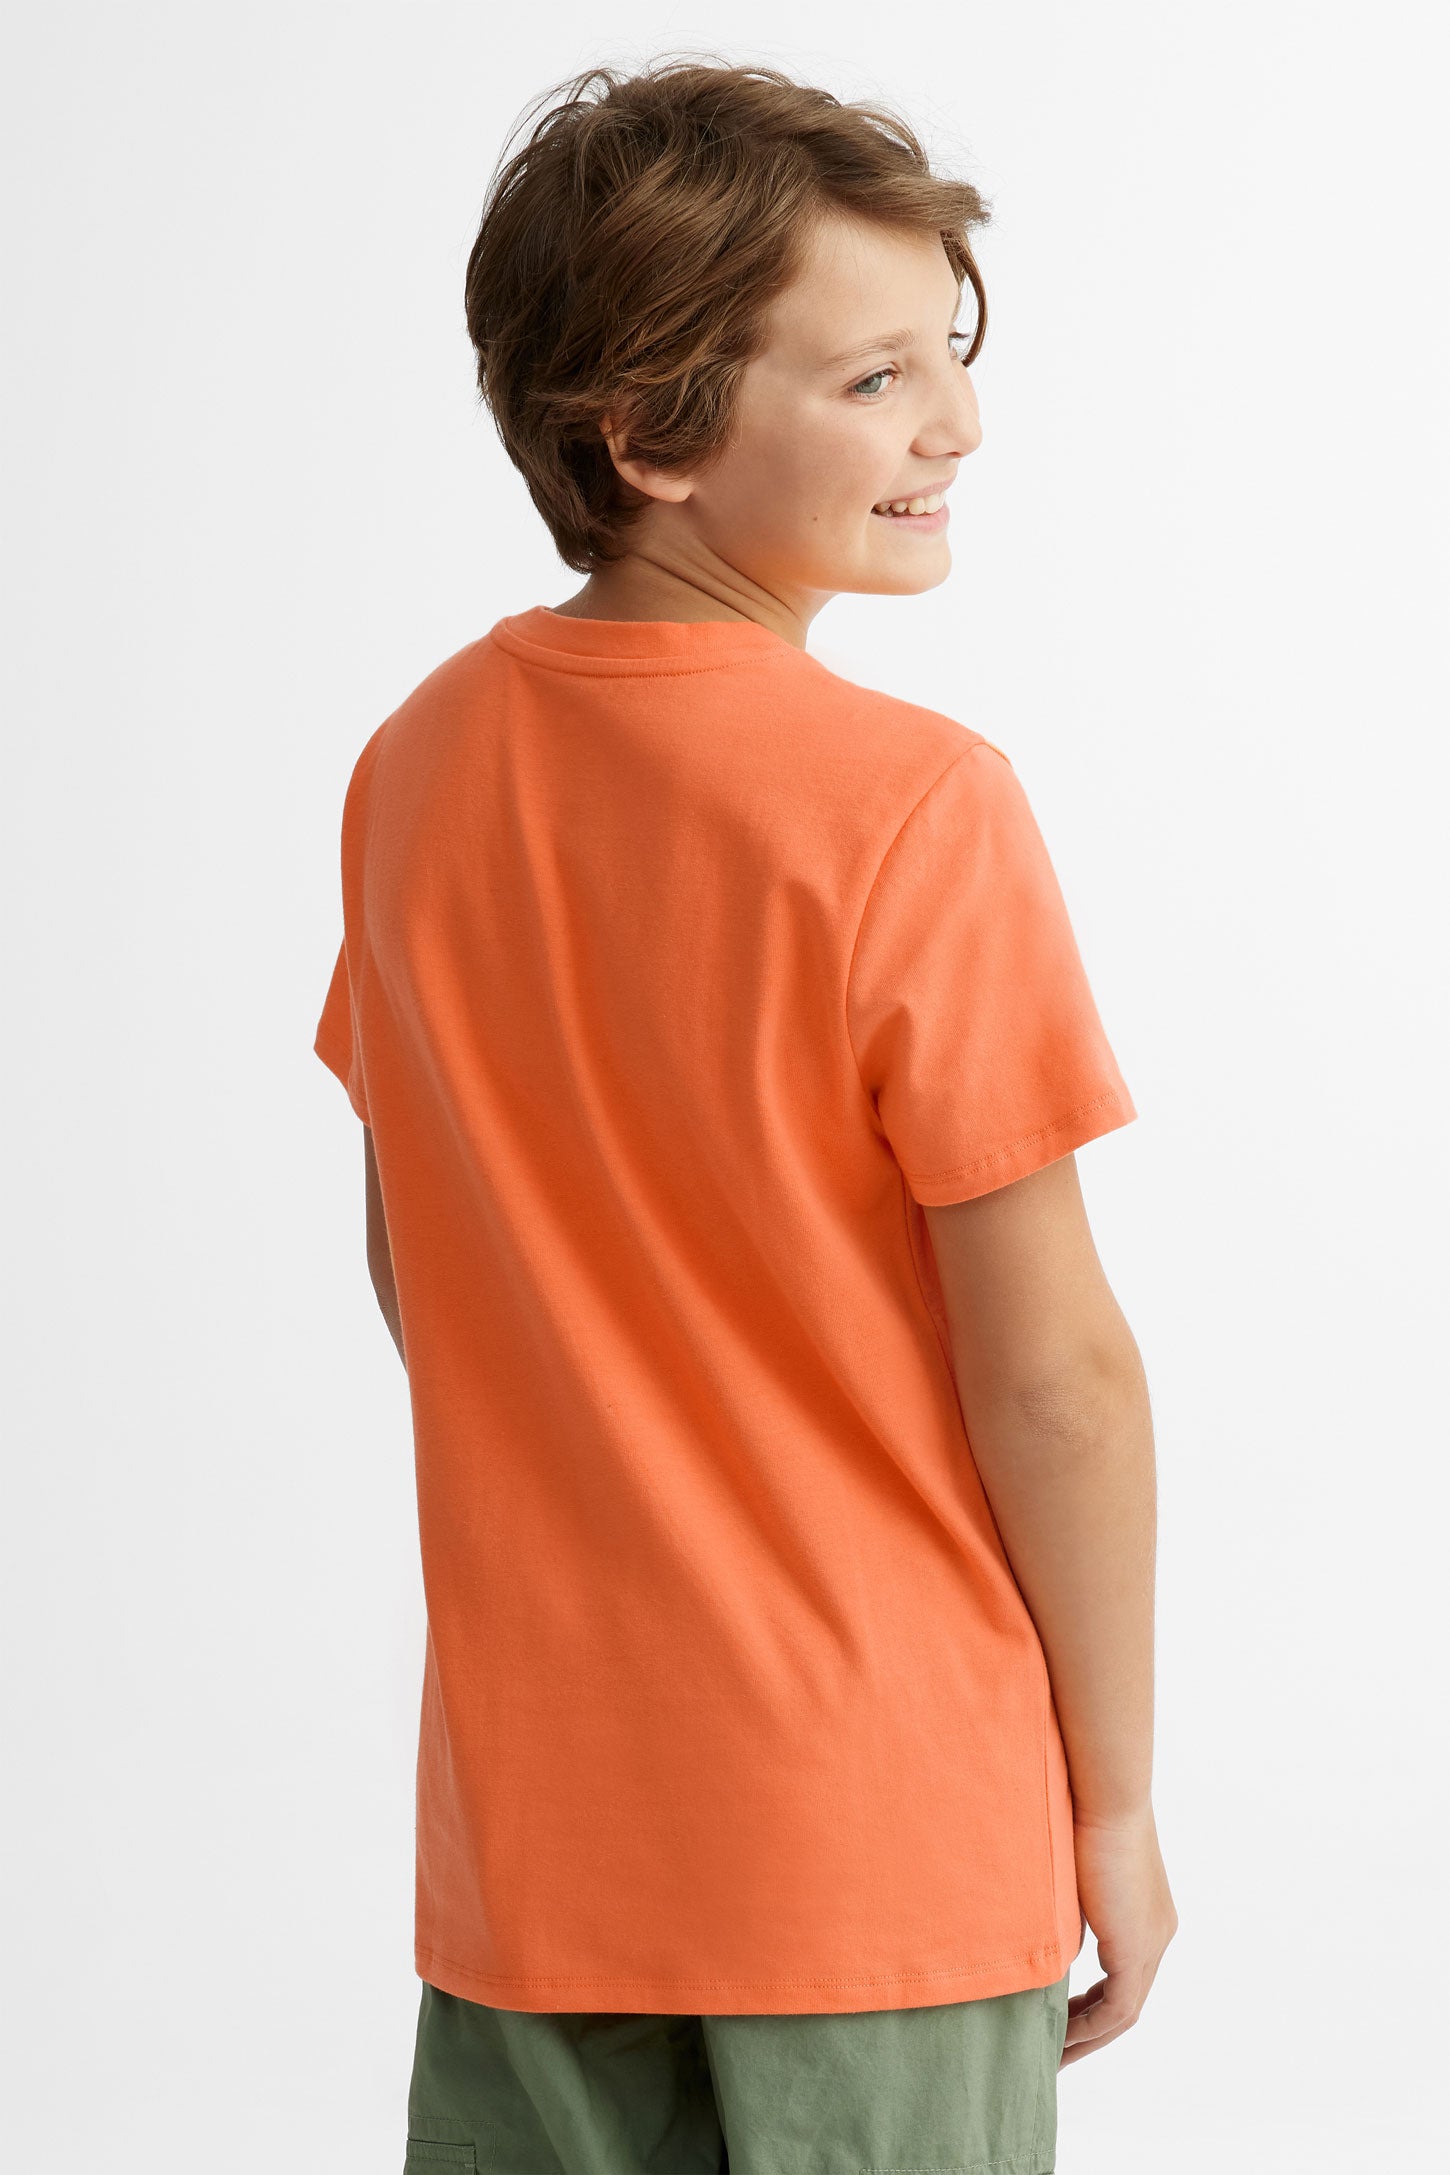 T-shirt col rond à poche, 2/25$ - Ado garçon && ORANGE